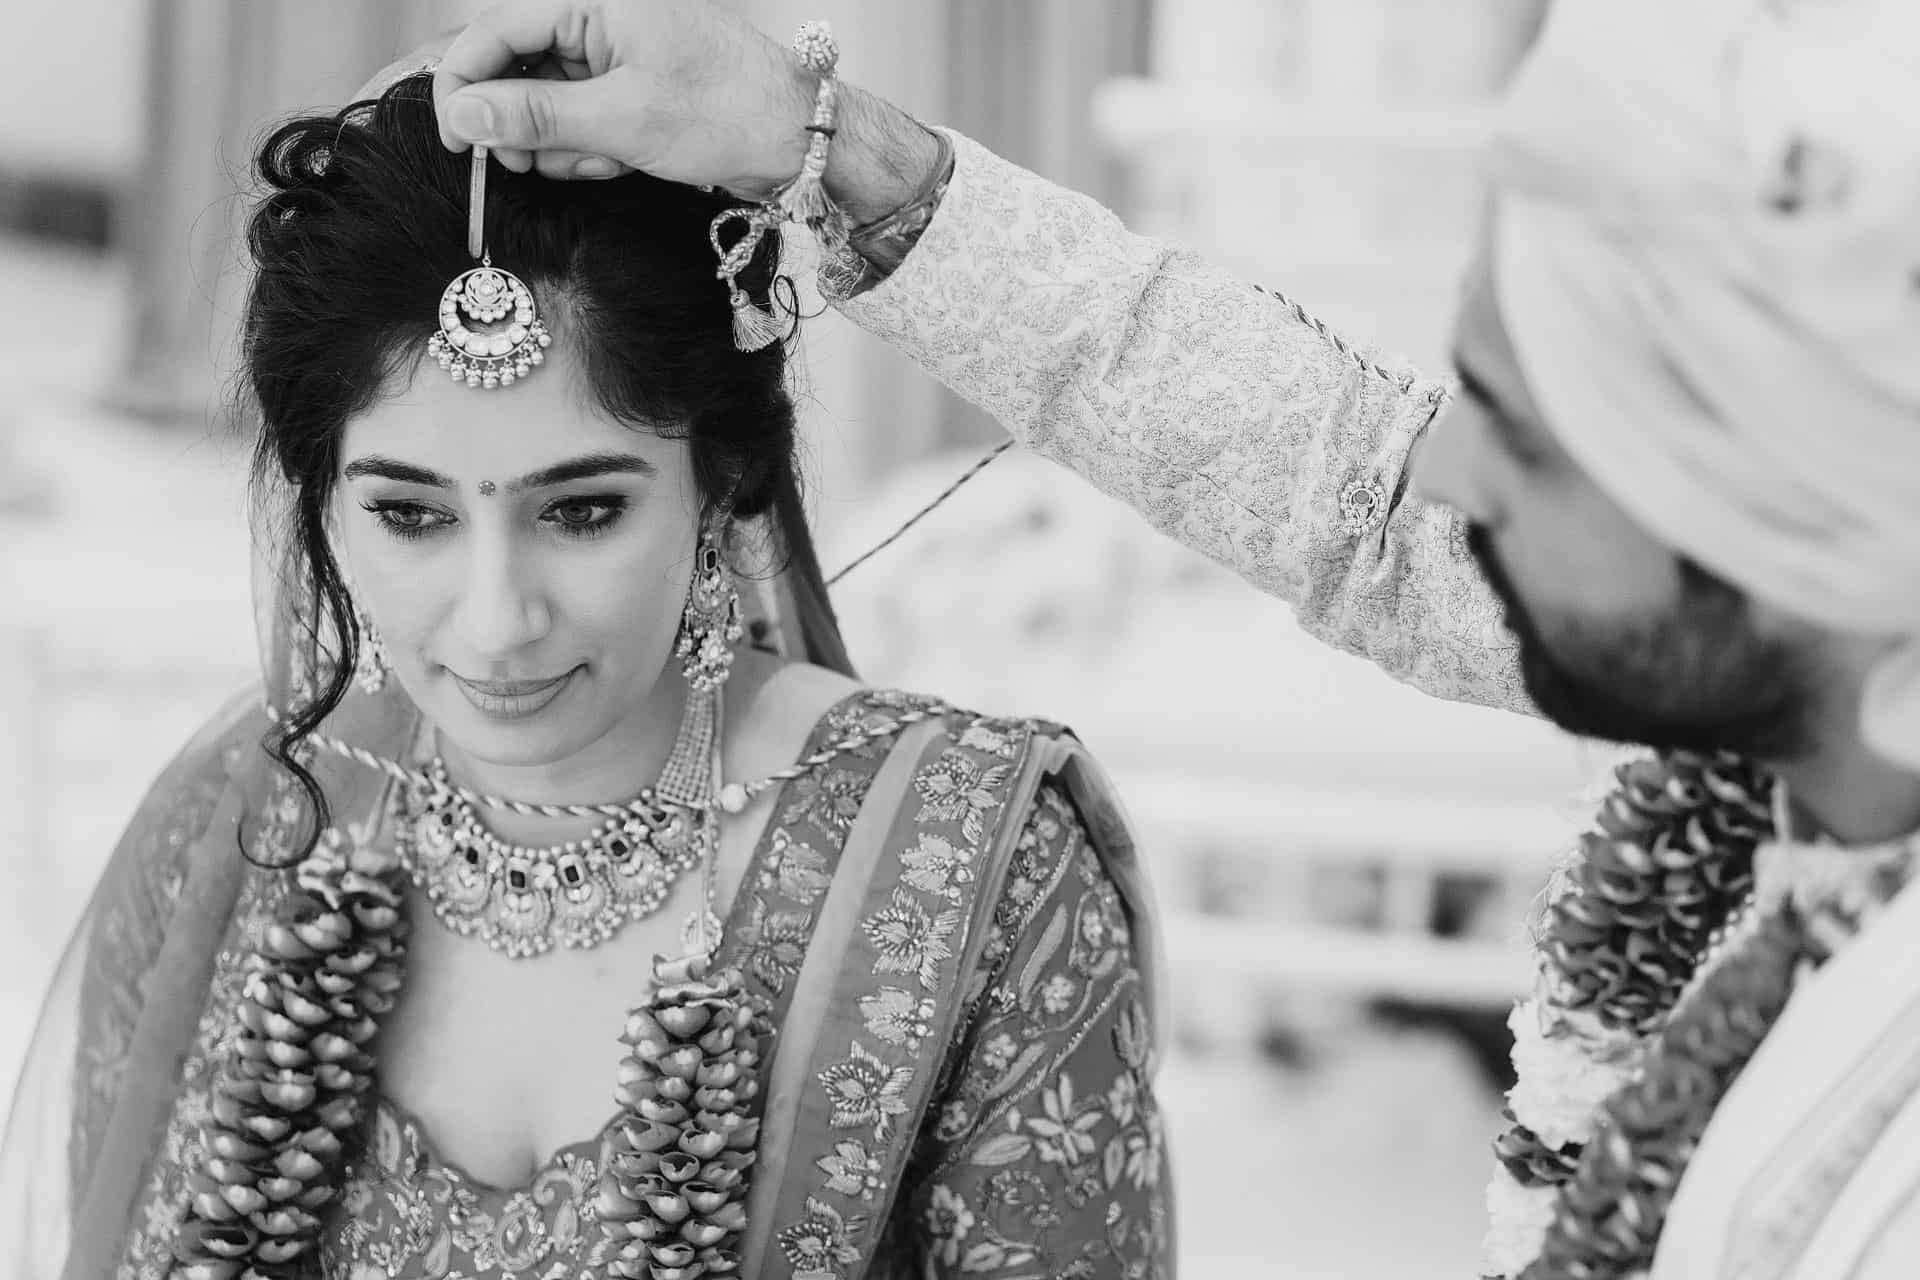 hindu wedding haveli manor photography